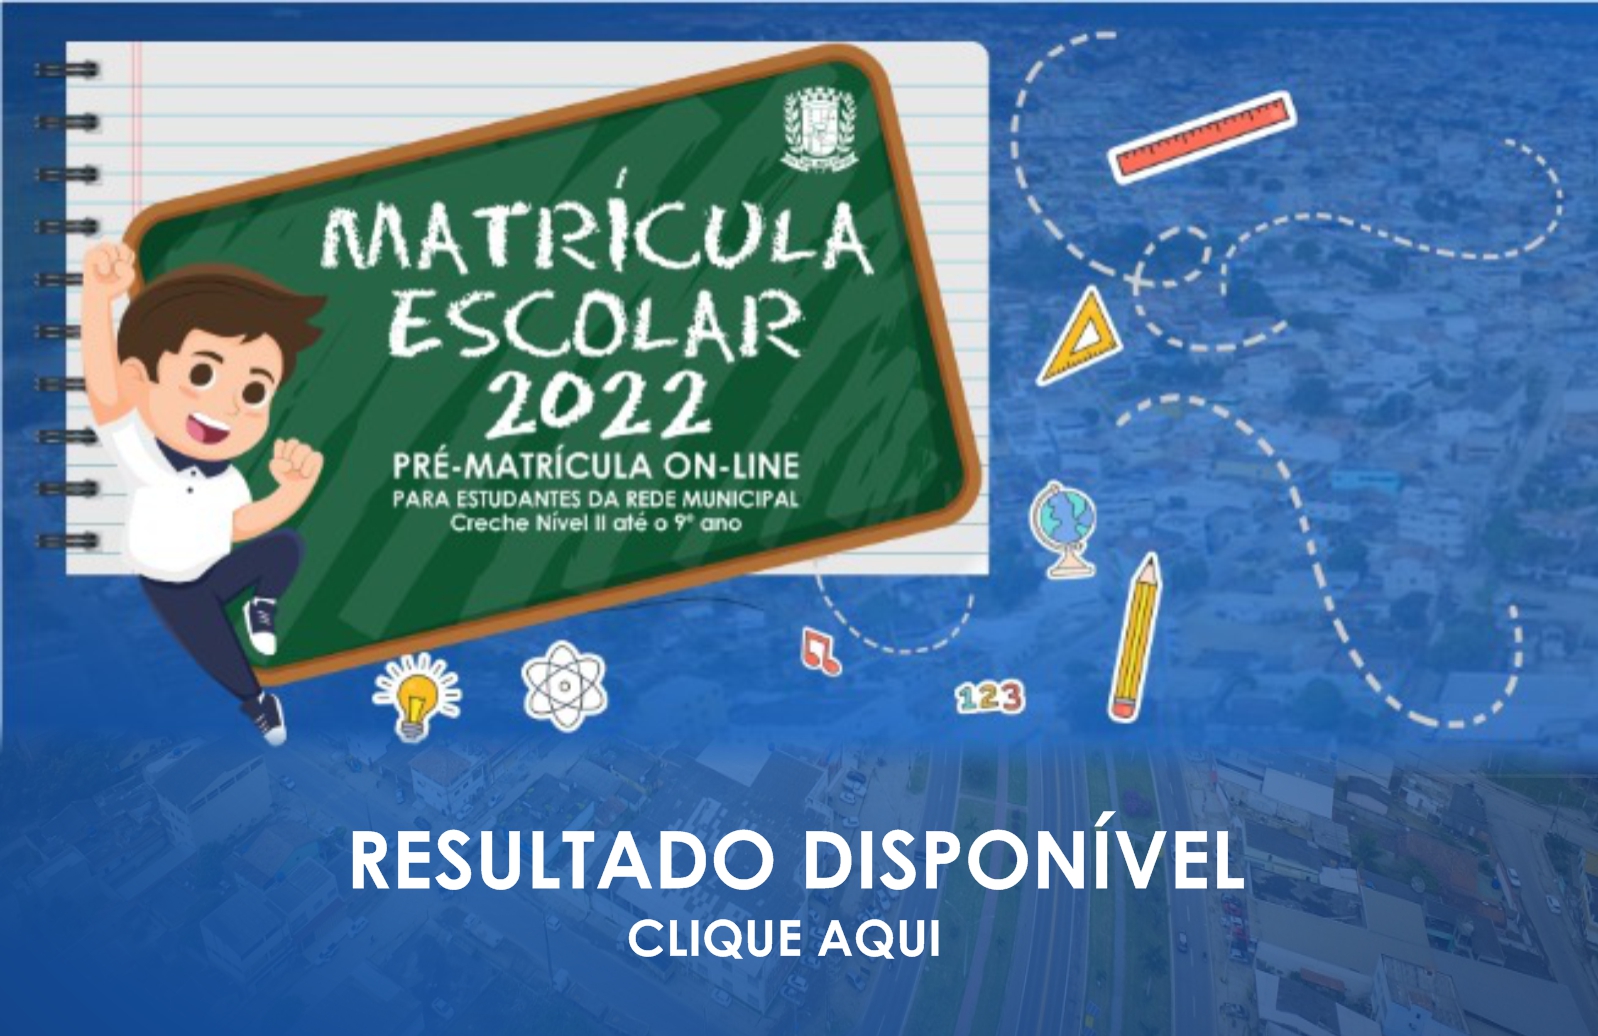 SECRETARIA MUNICIPAL DE EDUCAÇÃO DIVULGA RESULTADO DA MATRÍCULA ESCOLAR 2022 NO SITE DA PREFEITURA